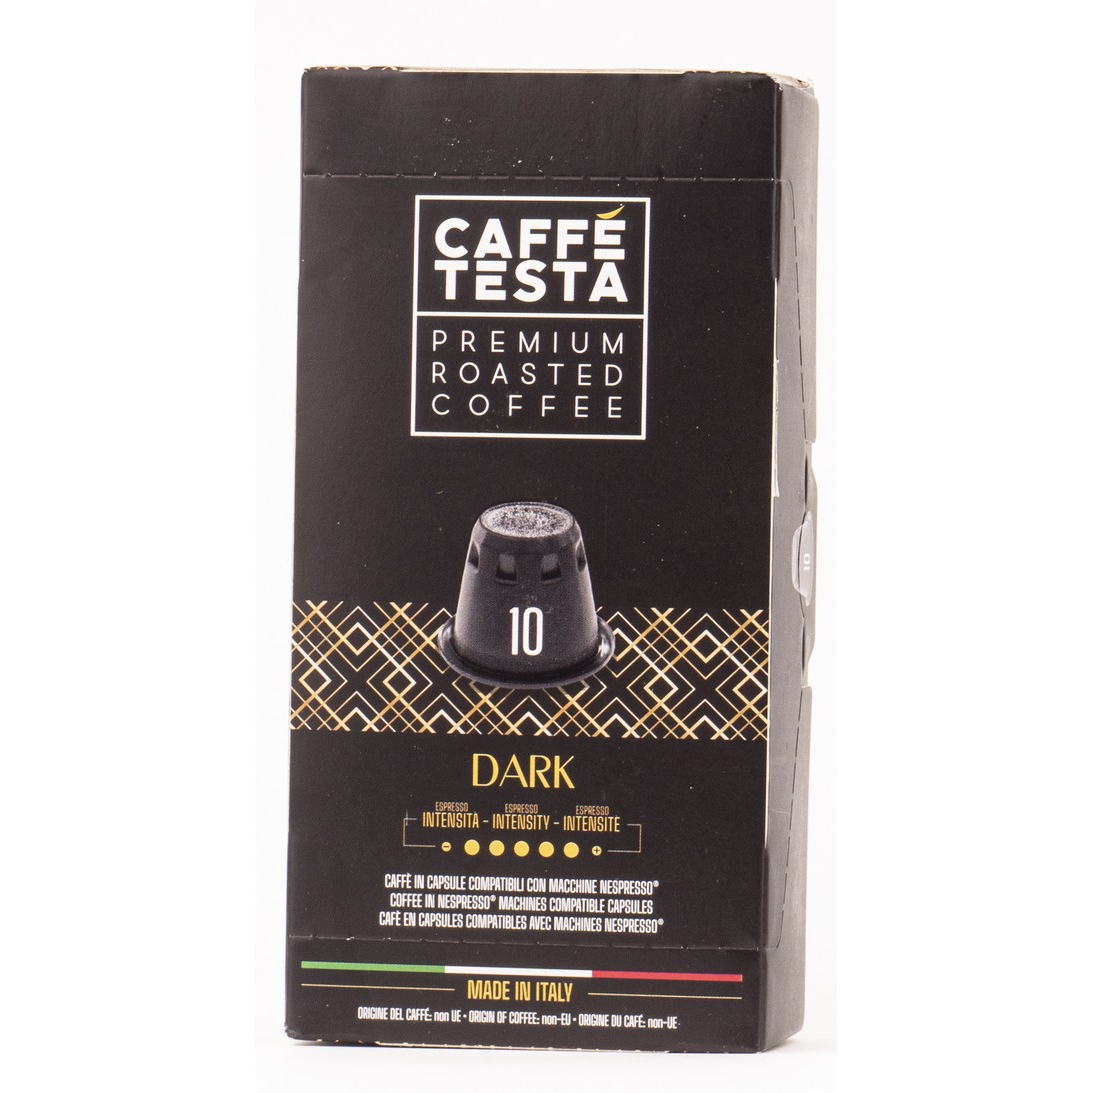 Кофе Caffe Testa Dark в капсулах 20/80, 55 г кофе в капсулах diemme caffe mente 10 шт